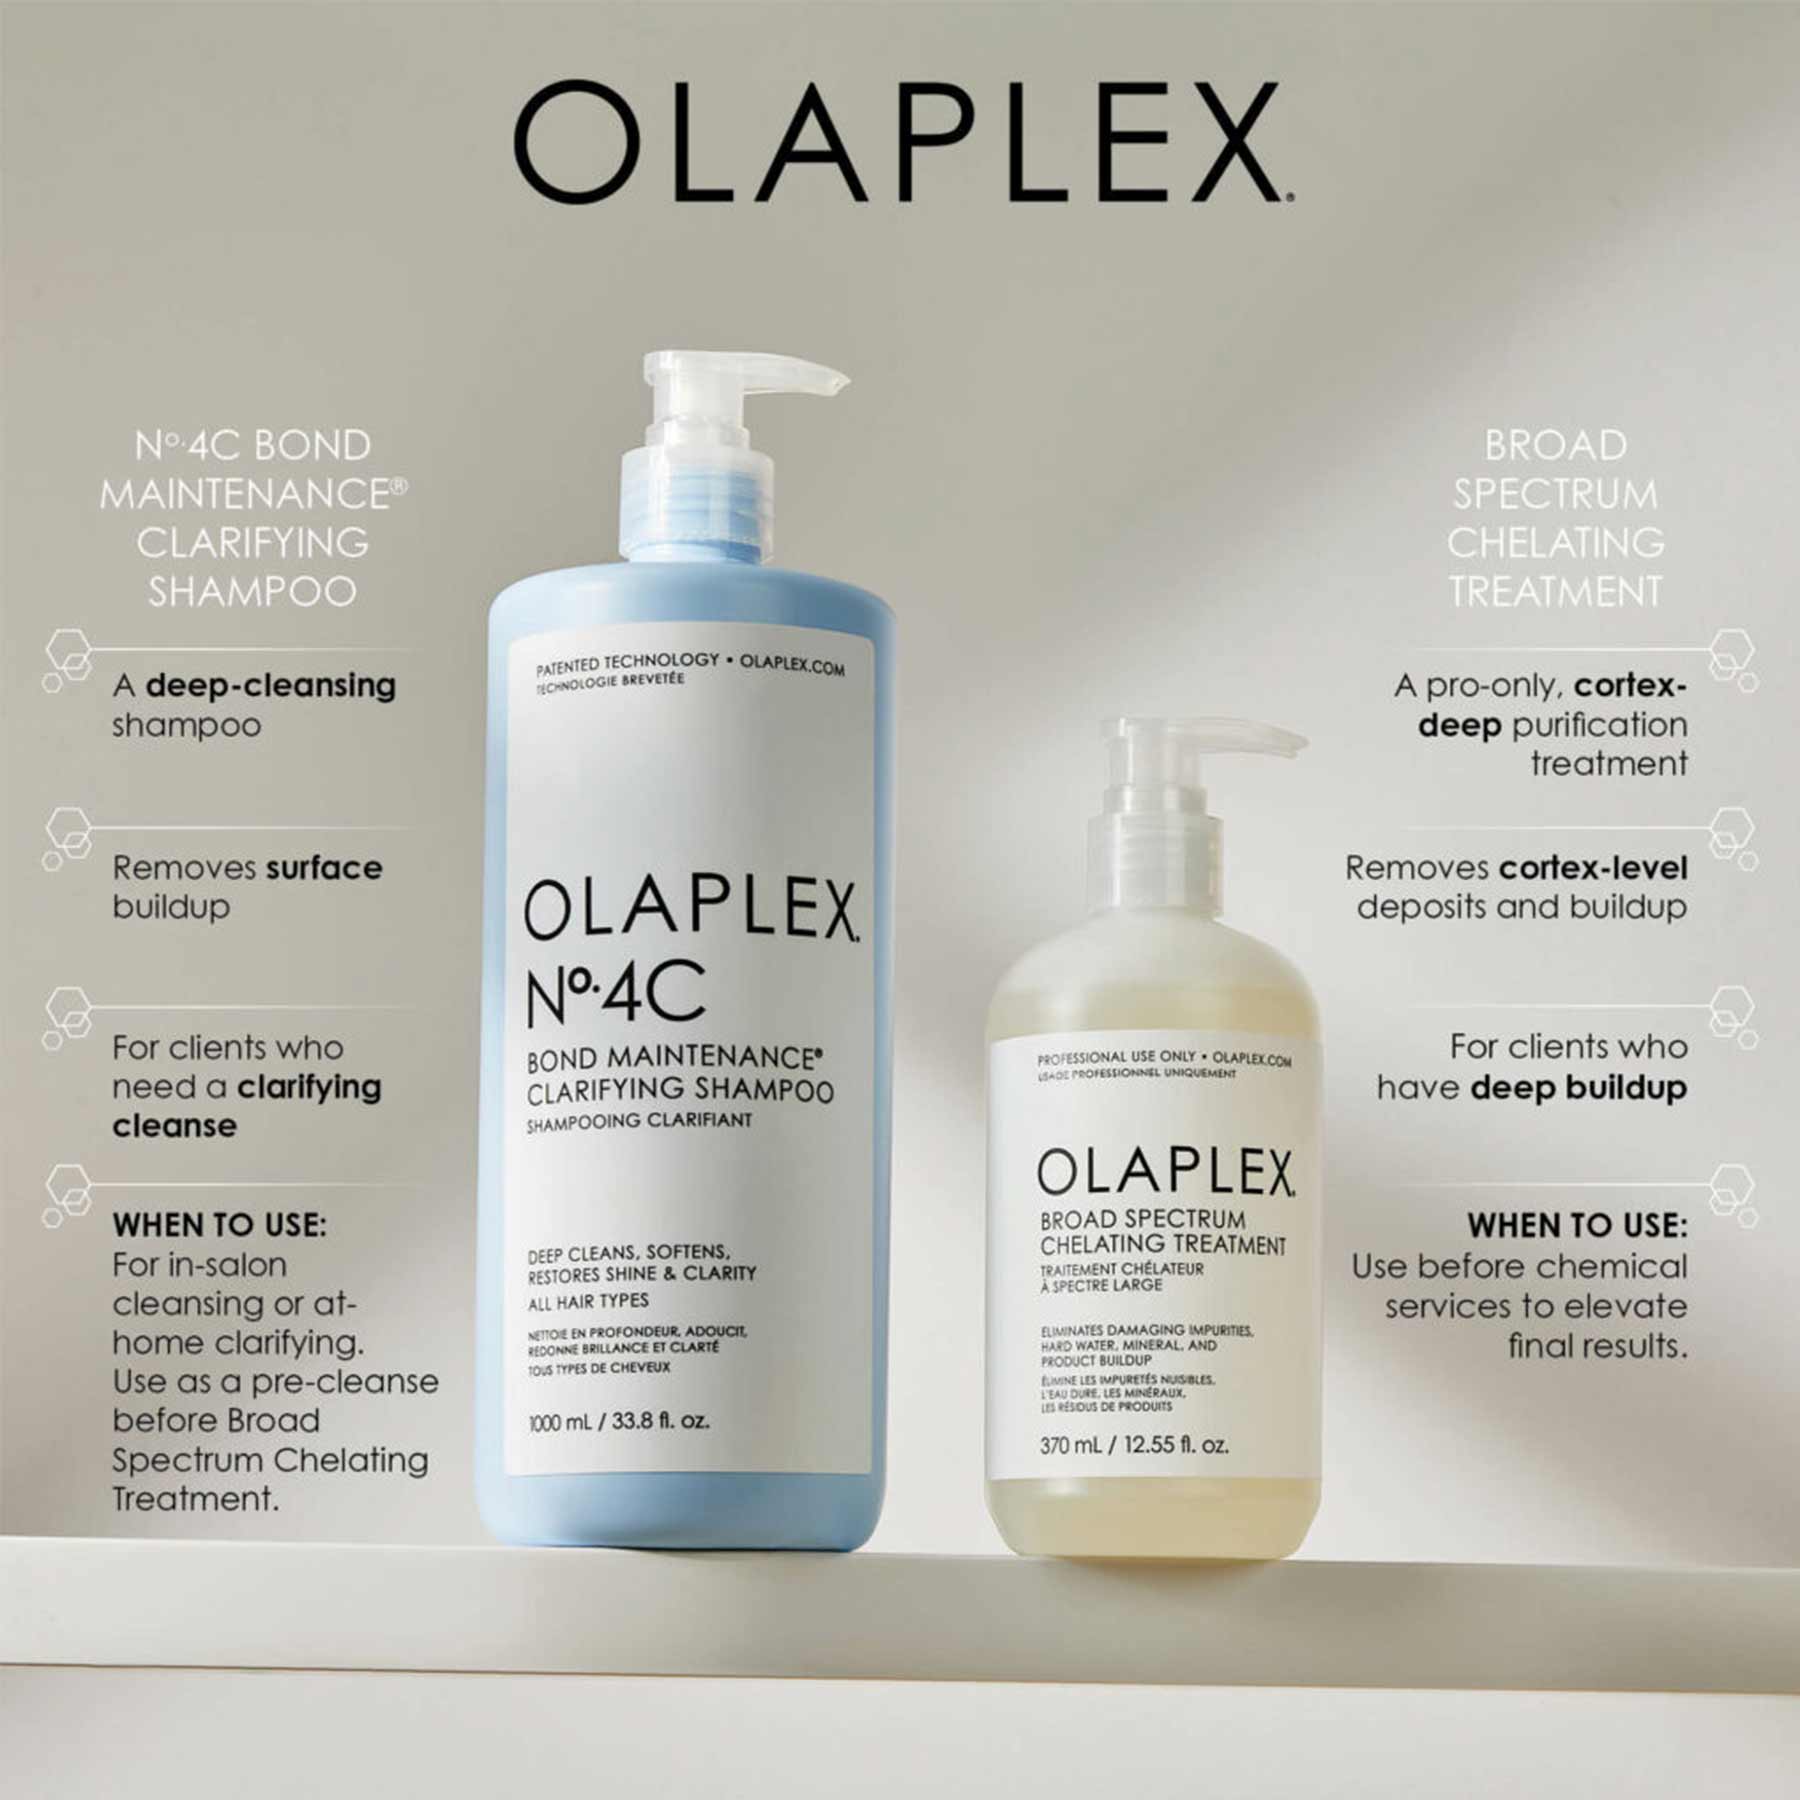 Olaplex Olaplex Broad Spectrum Chelating Treatment